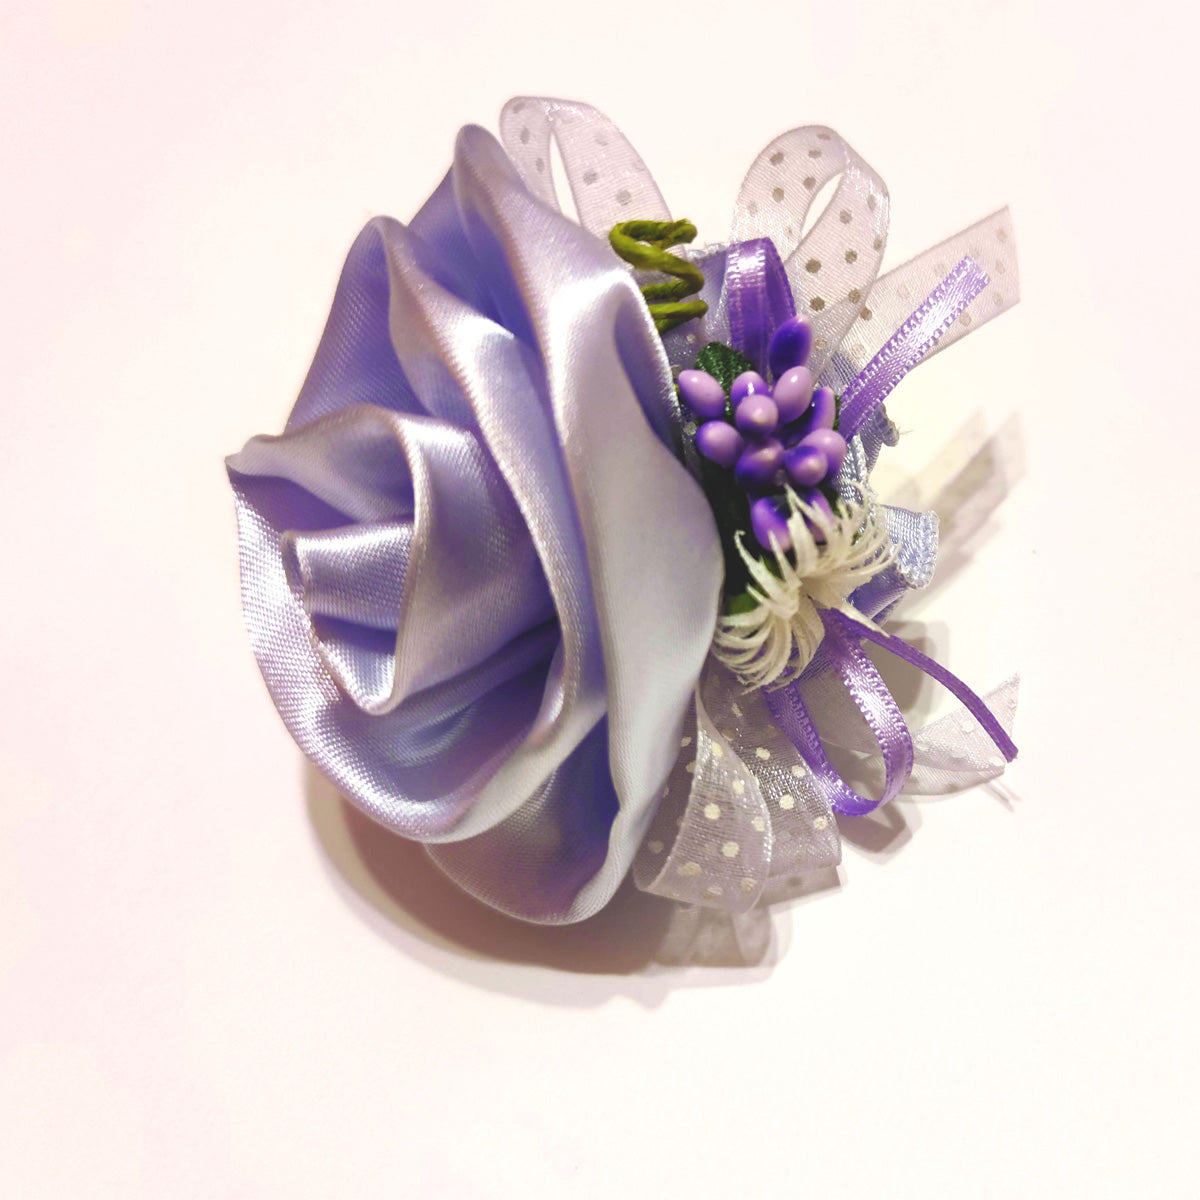 Rosa per confetti in raso lilla per comunione o cresima bimba – Bomboniere  Infinity